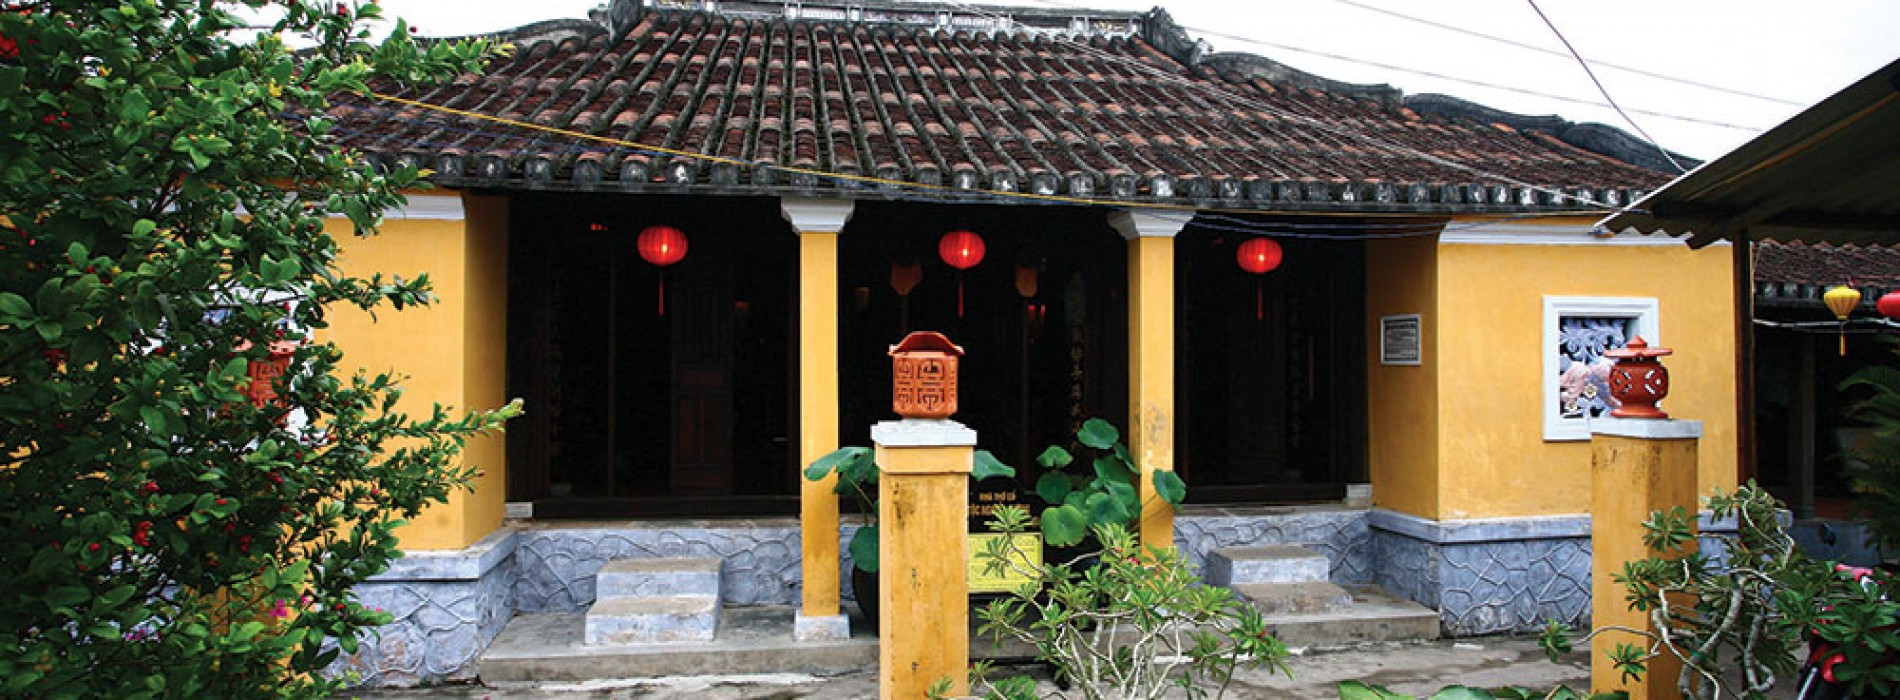 Nhà thờ tộc Nguyễn Tường ở Hội An